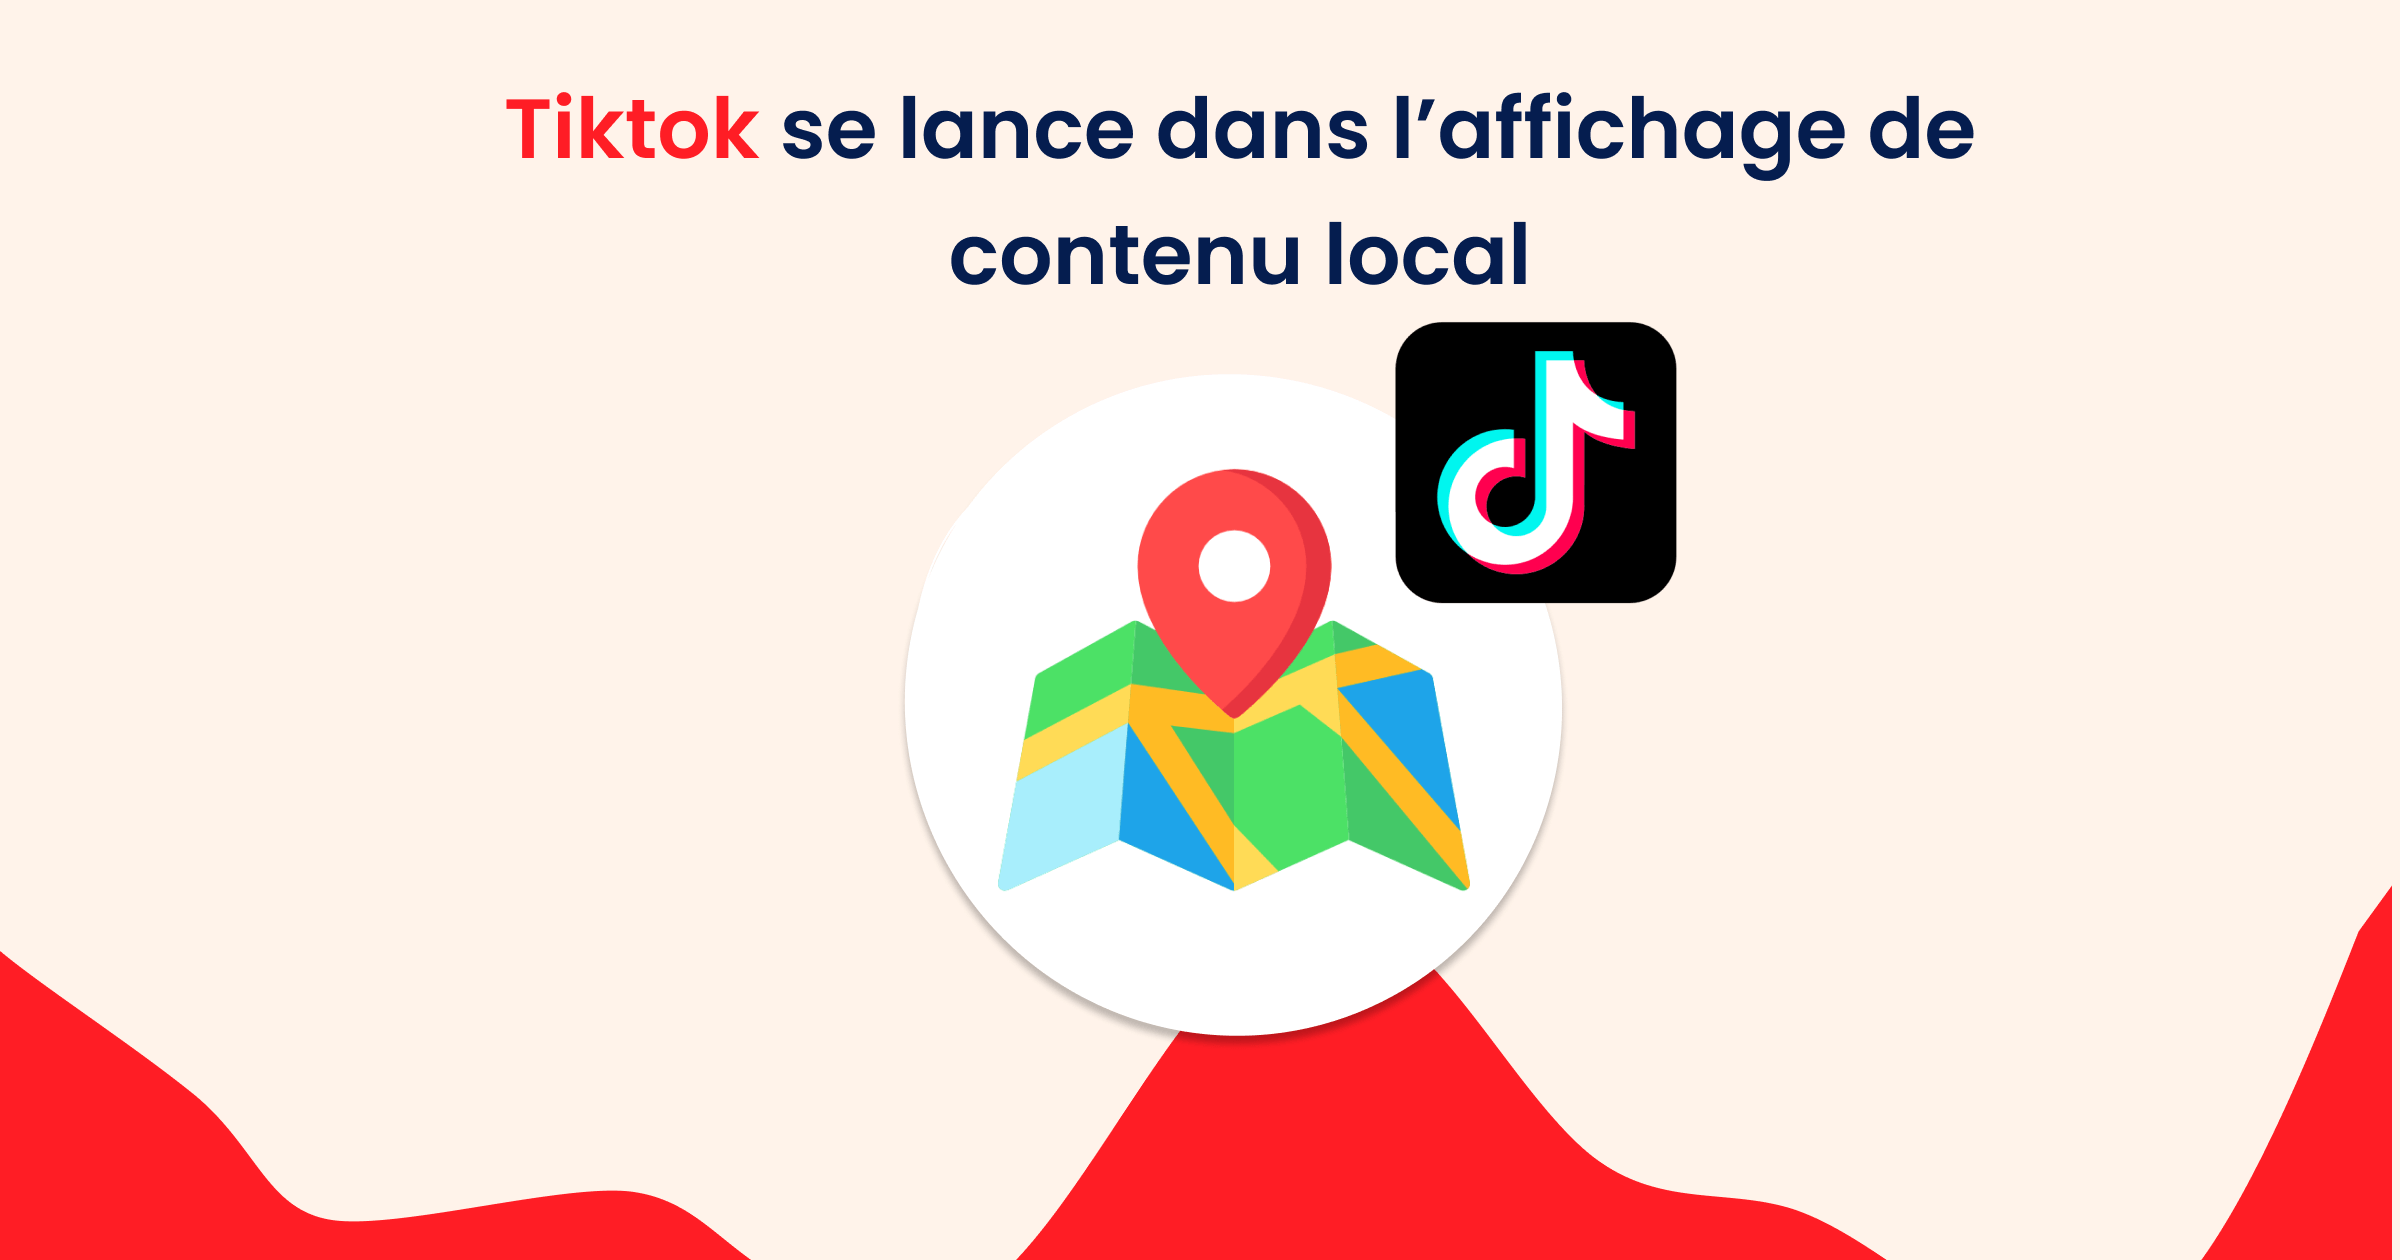 Tiktok se lance dans l’affichage de contenu local